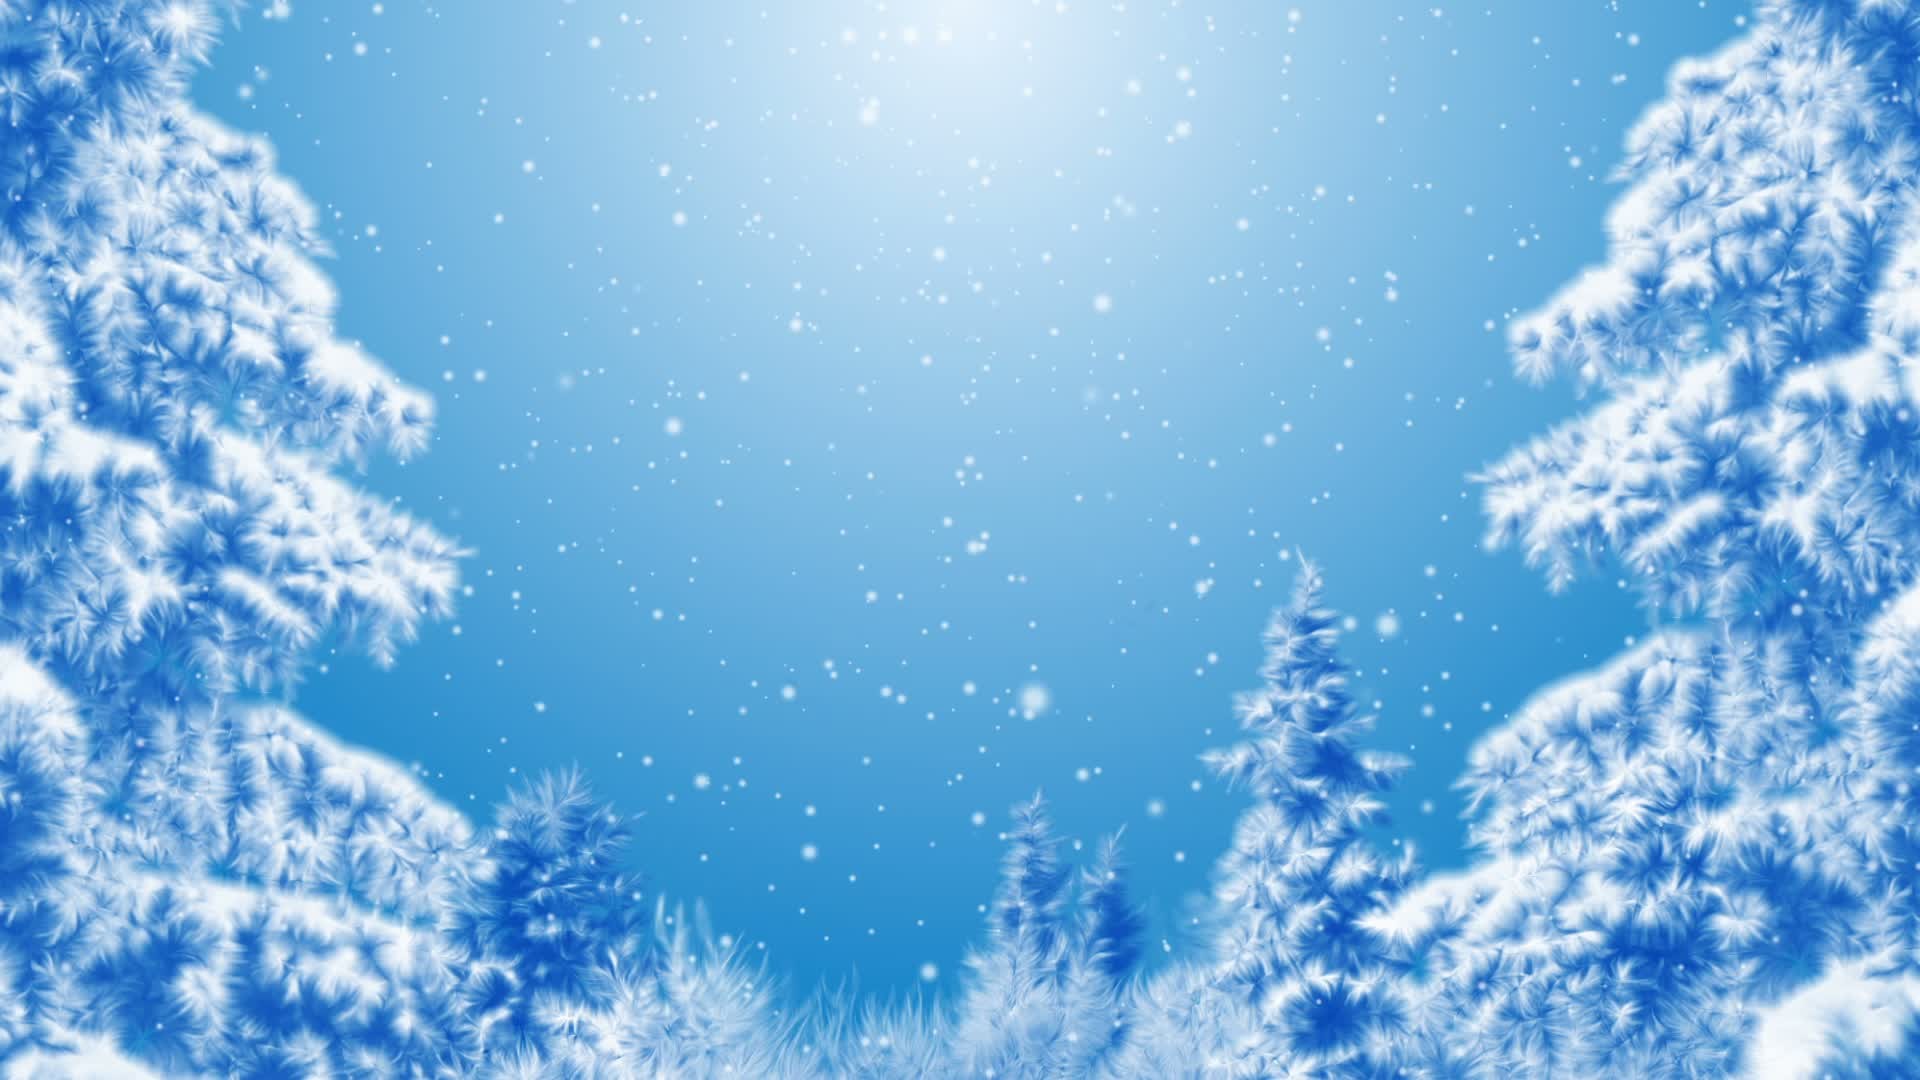 1920x1080 Blue Winter Background